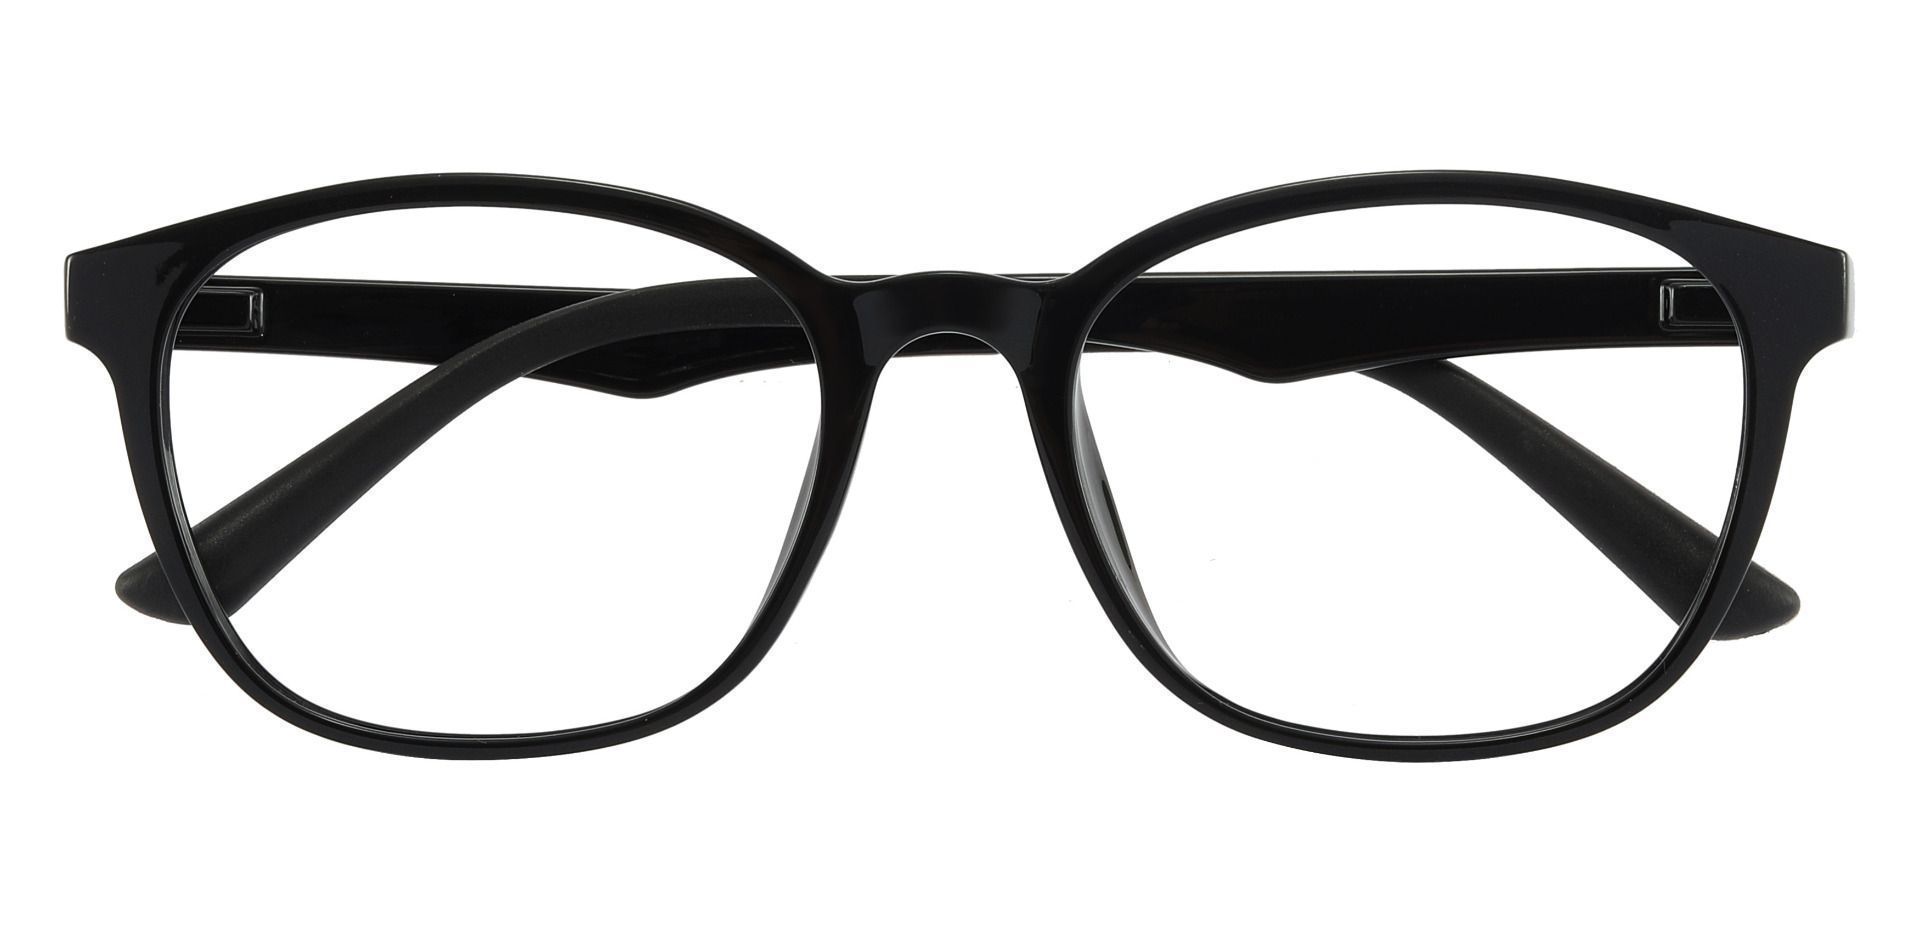 Ursula Oval Prescription Glasses - Black